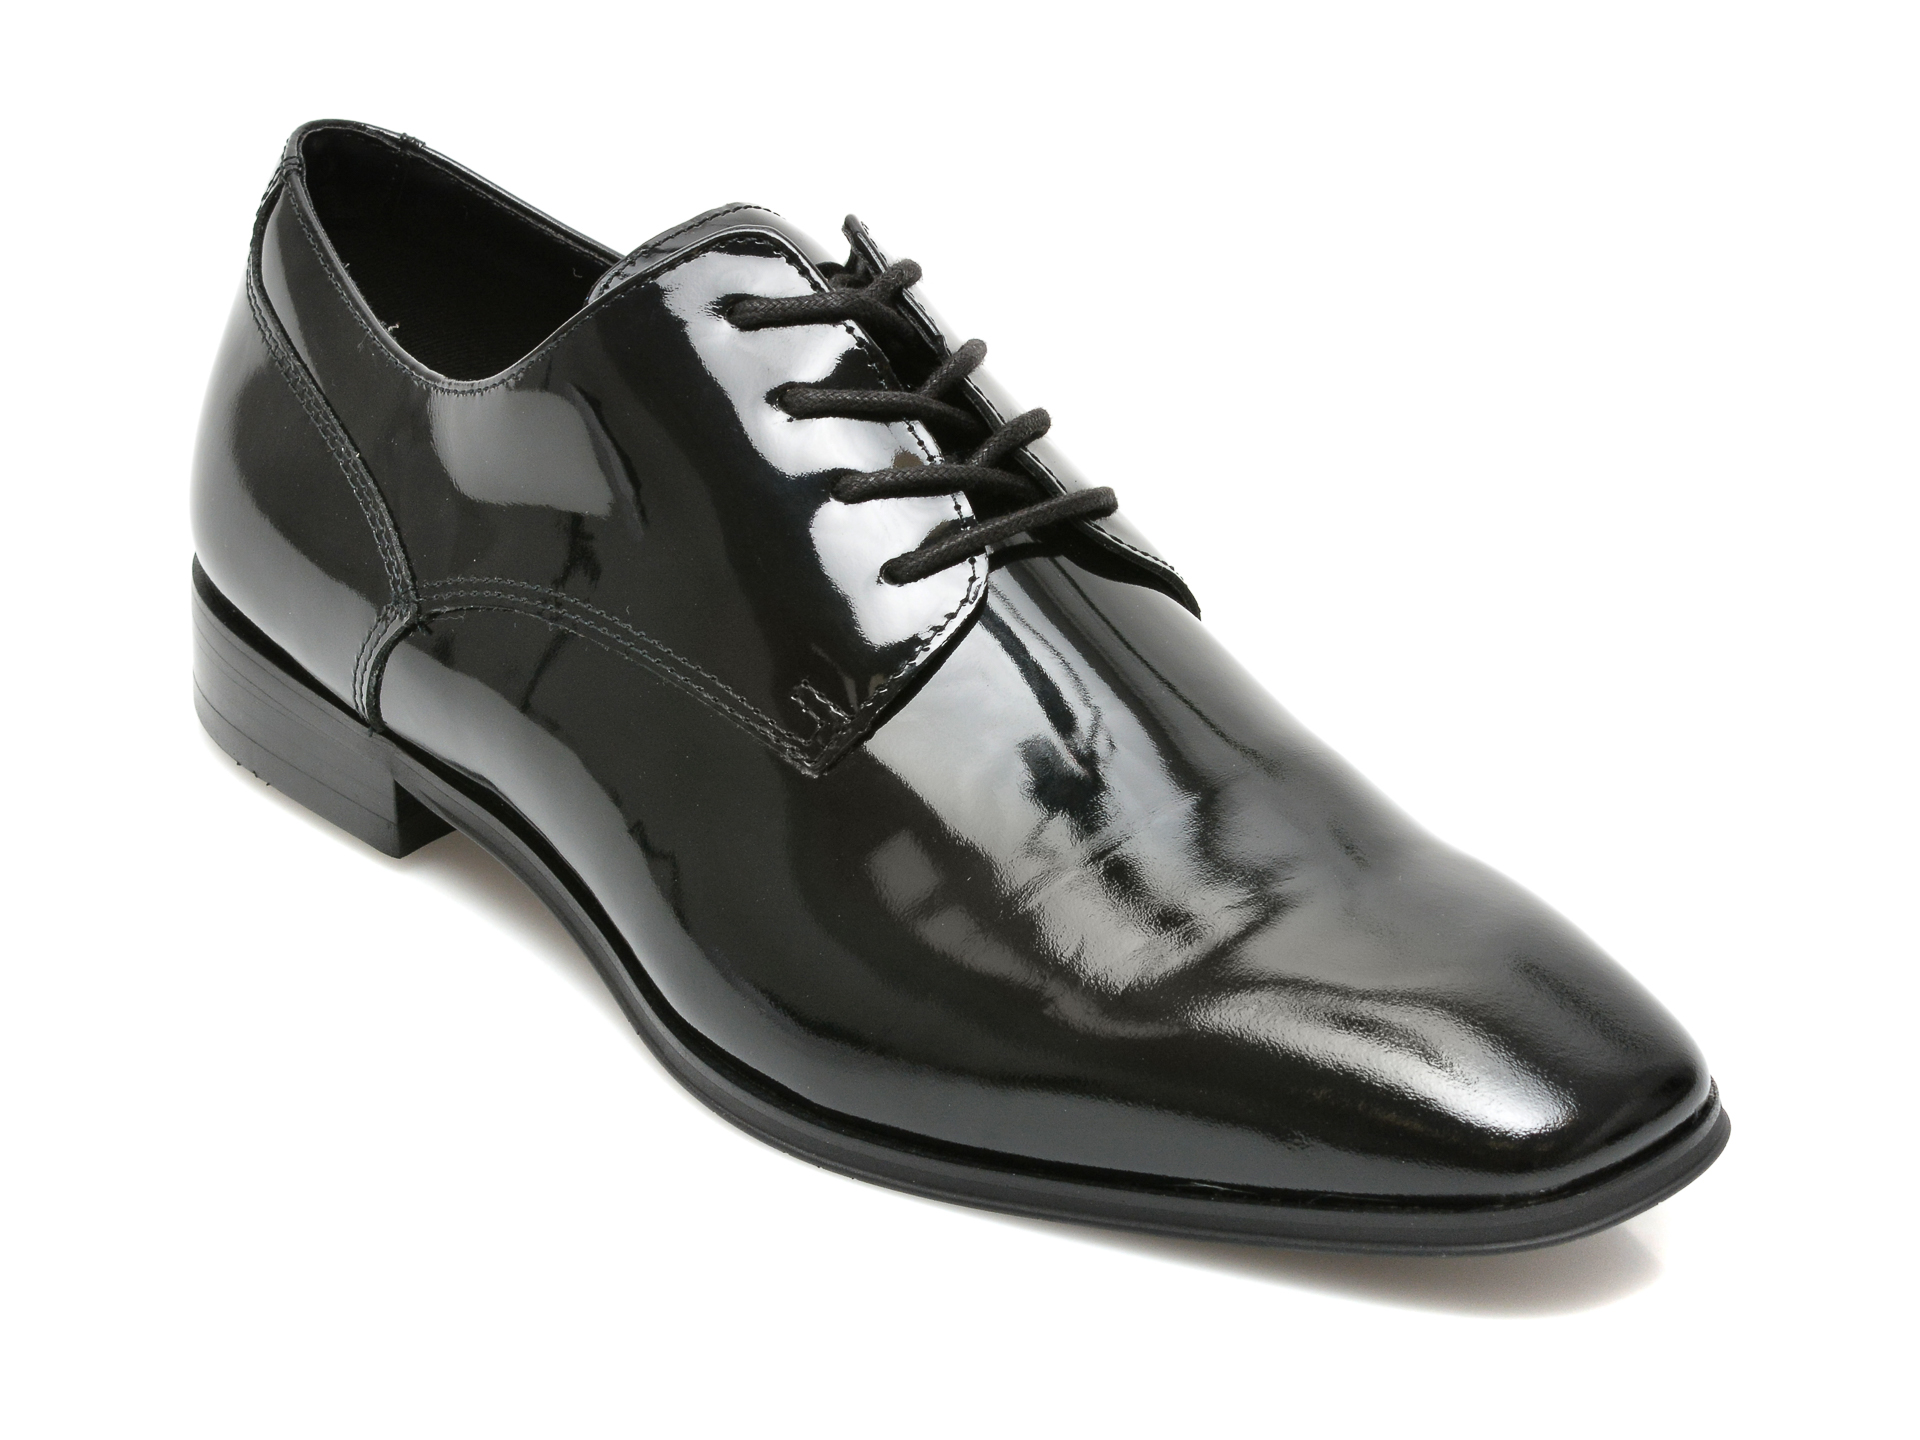 Pantofi ALDO negri, NOVVIO001, din piele naturala lacuita Aldo Aldo